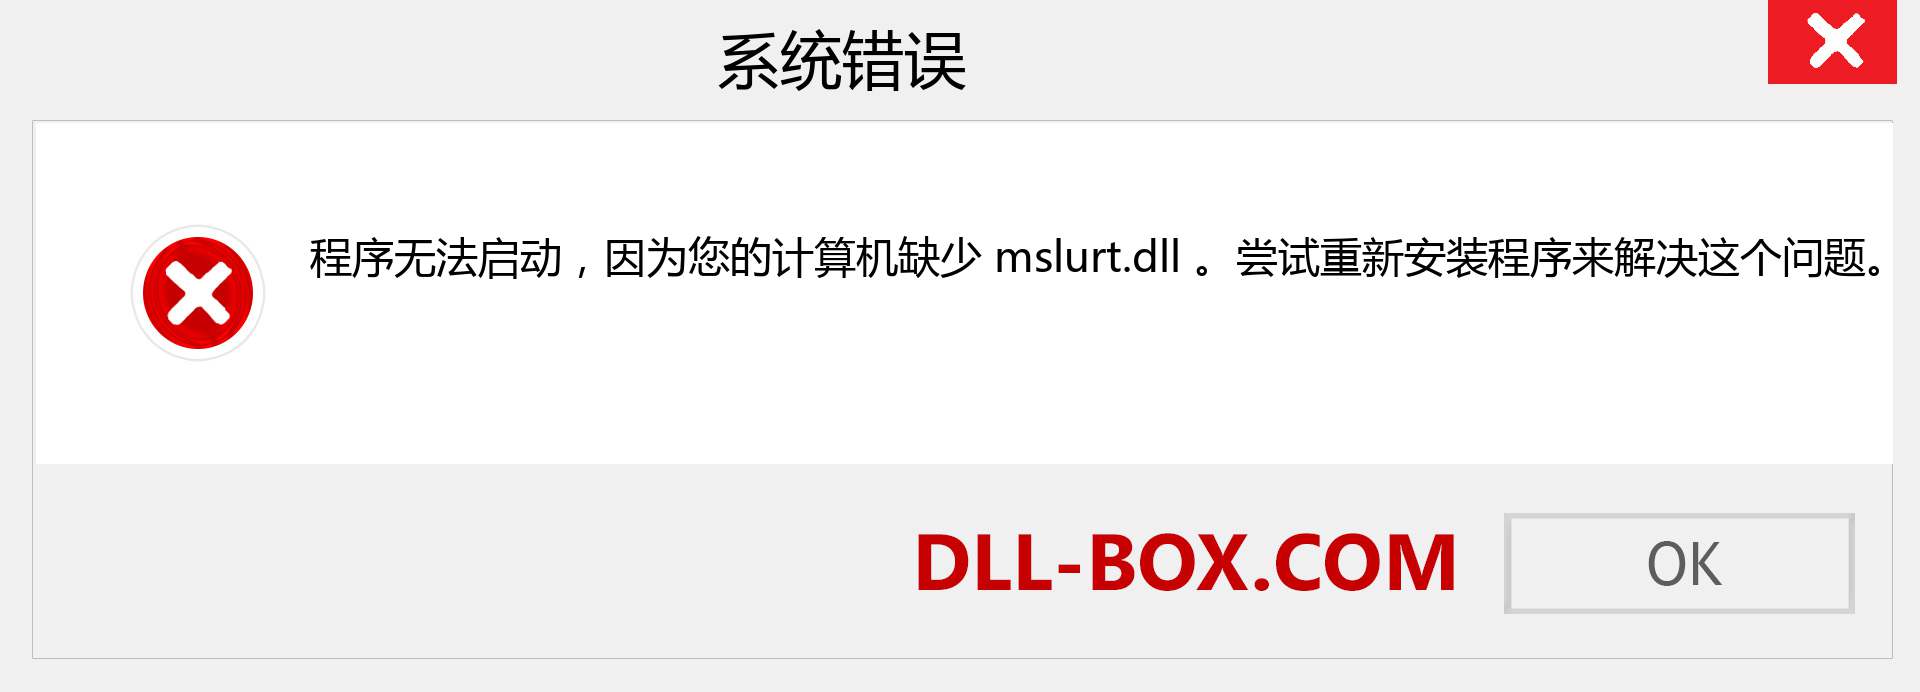 mslurt.dll 文件丢失？。 适用于 Windows 7、8、10 的下载 - 修复 Windows、照片、图像上的 mslurt dll 丢失错误